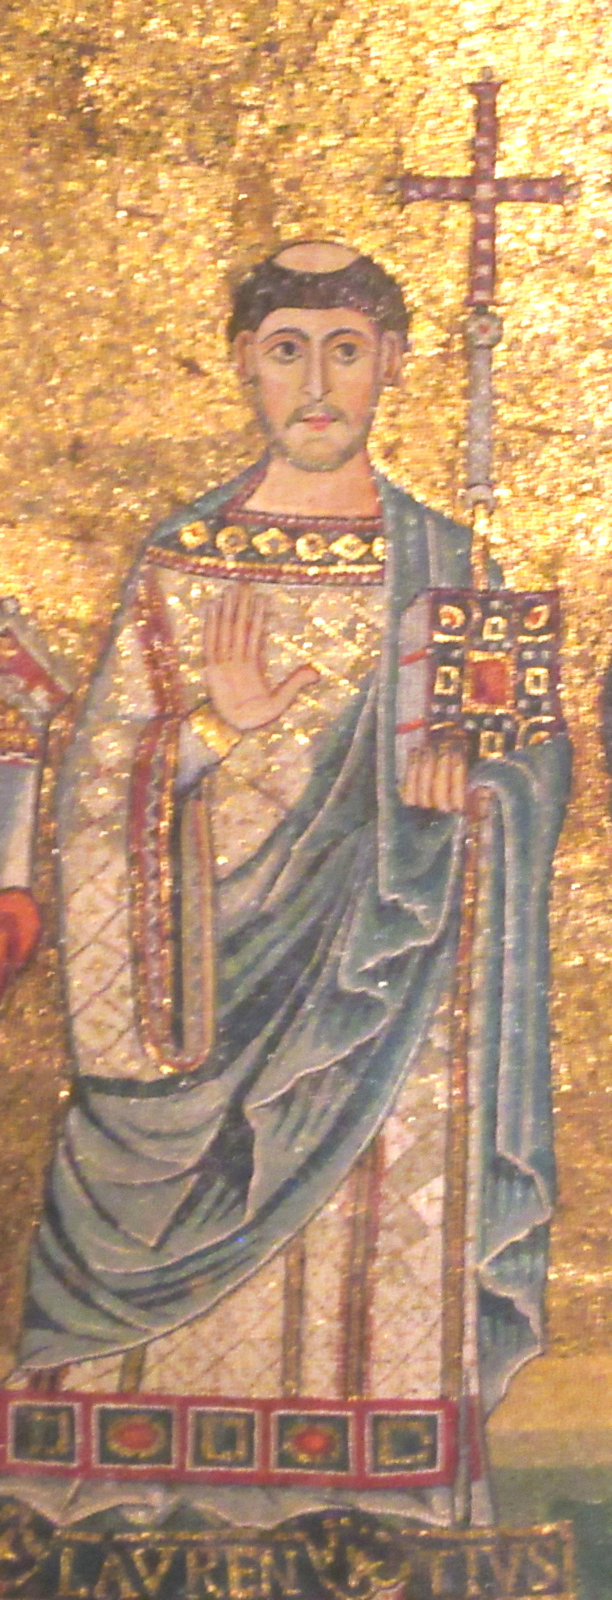 Apsismosaik, um 1140, in der Kirche Santa Maria in Trastevere in Rom